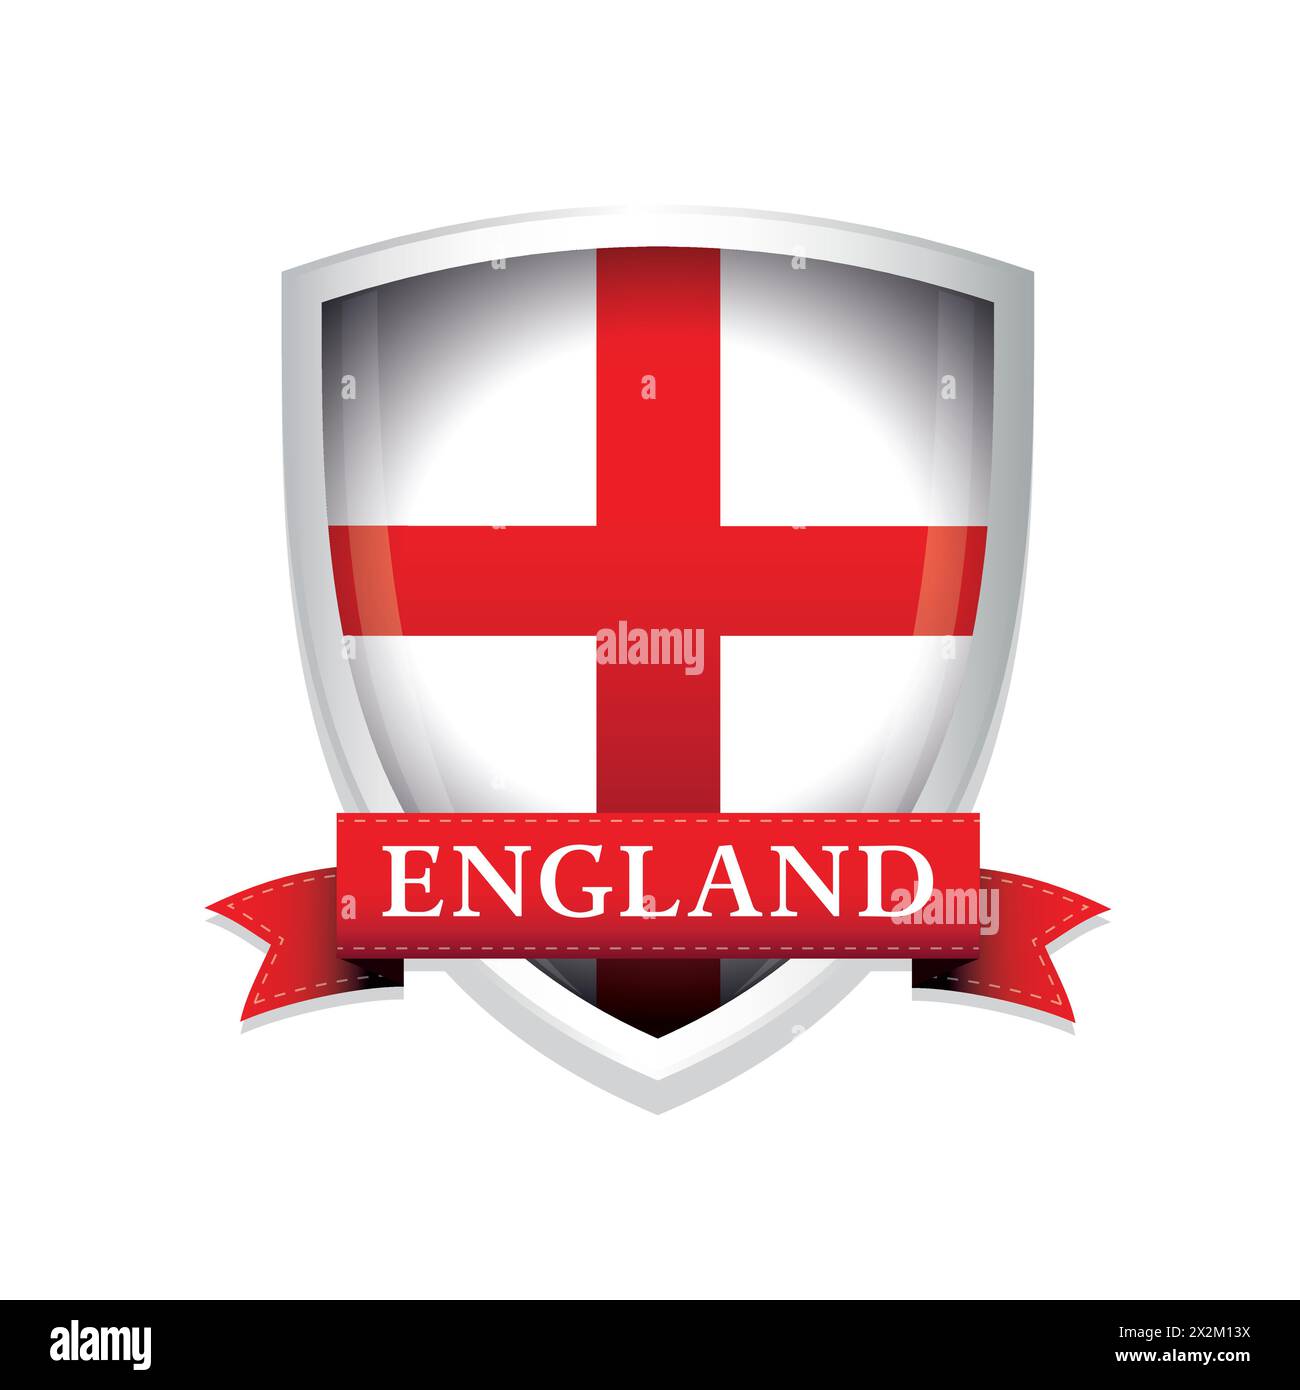 England flag shield ribon sign vector Stock Vector